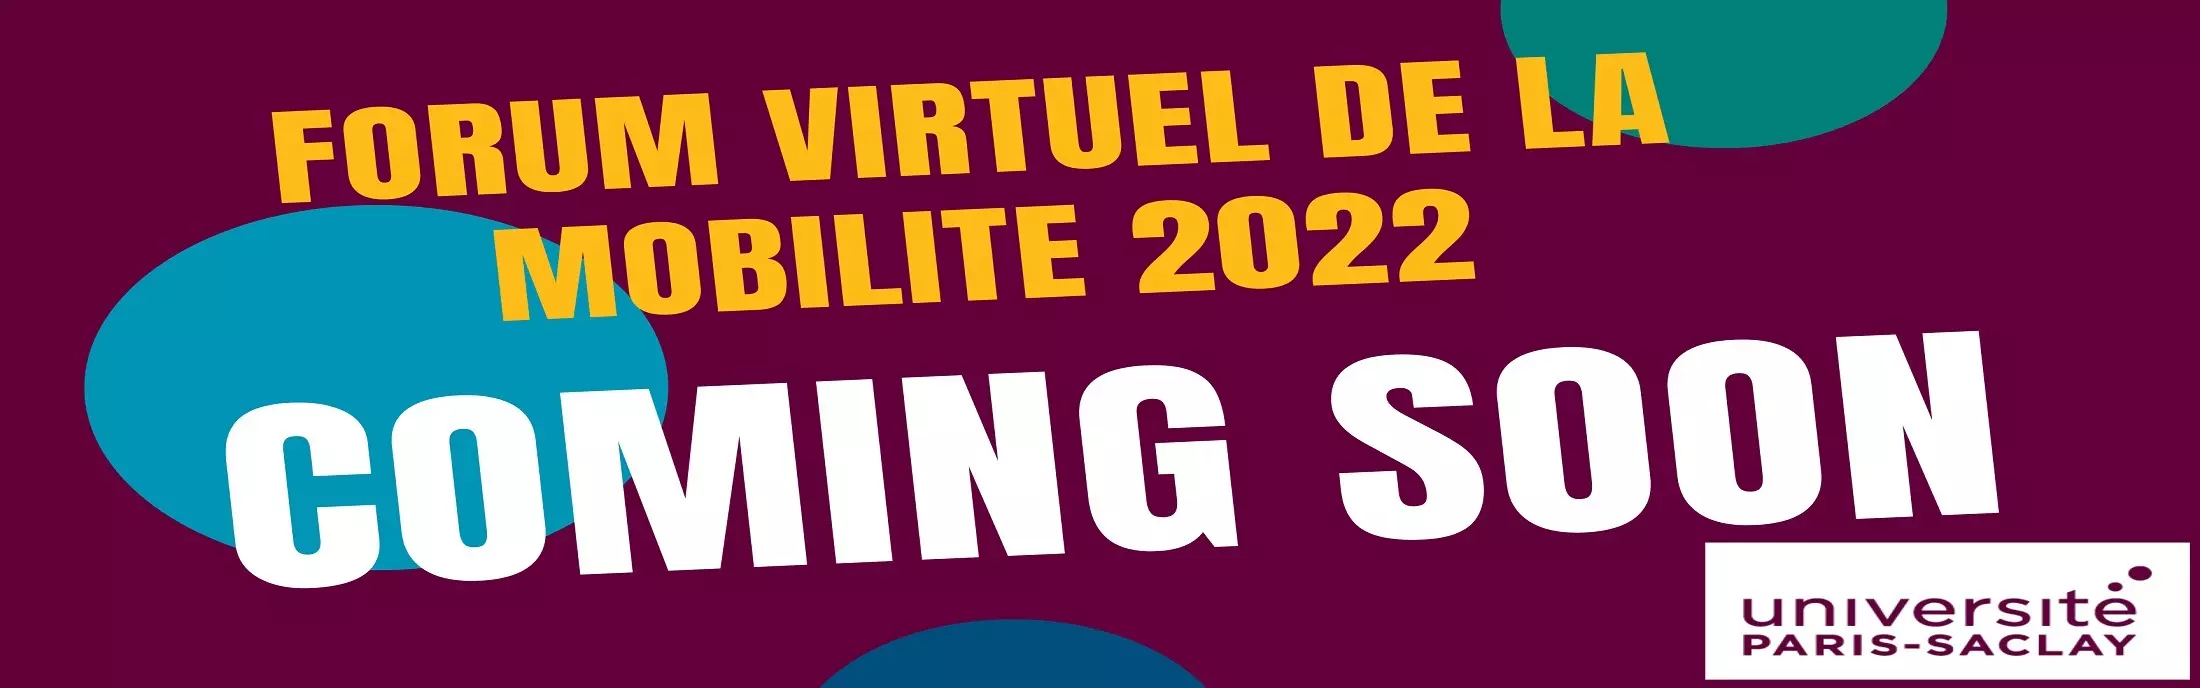 Rassemblements-Forum virtuel de la mobilité étudiante 2022